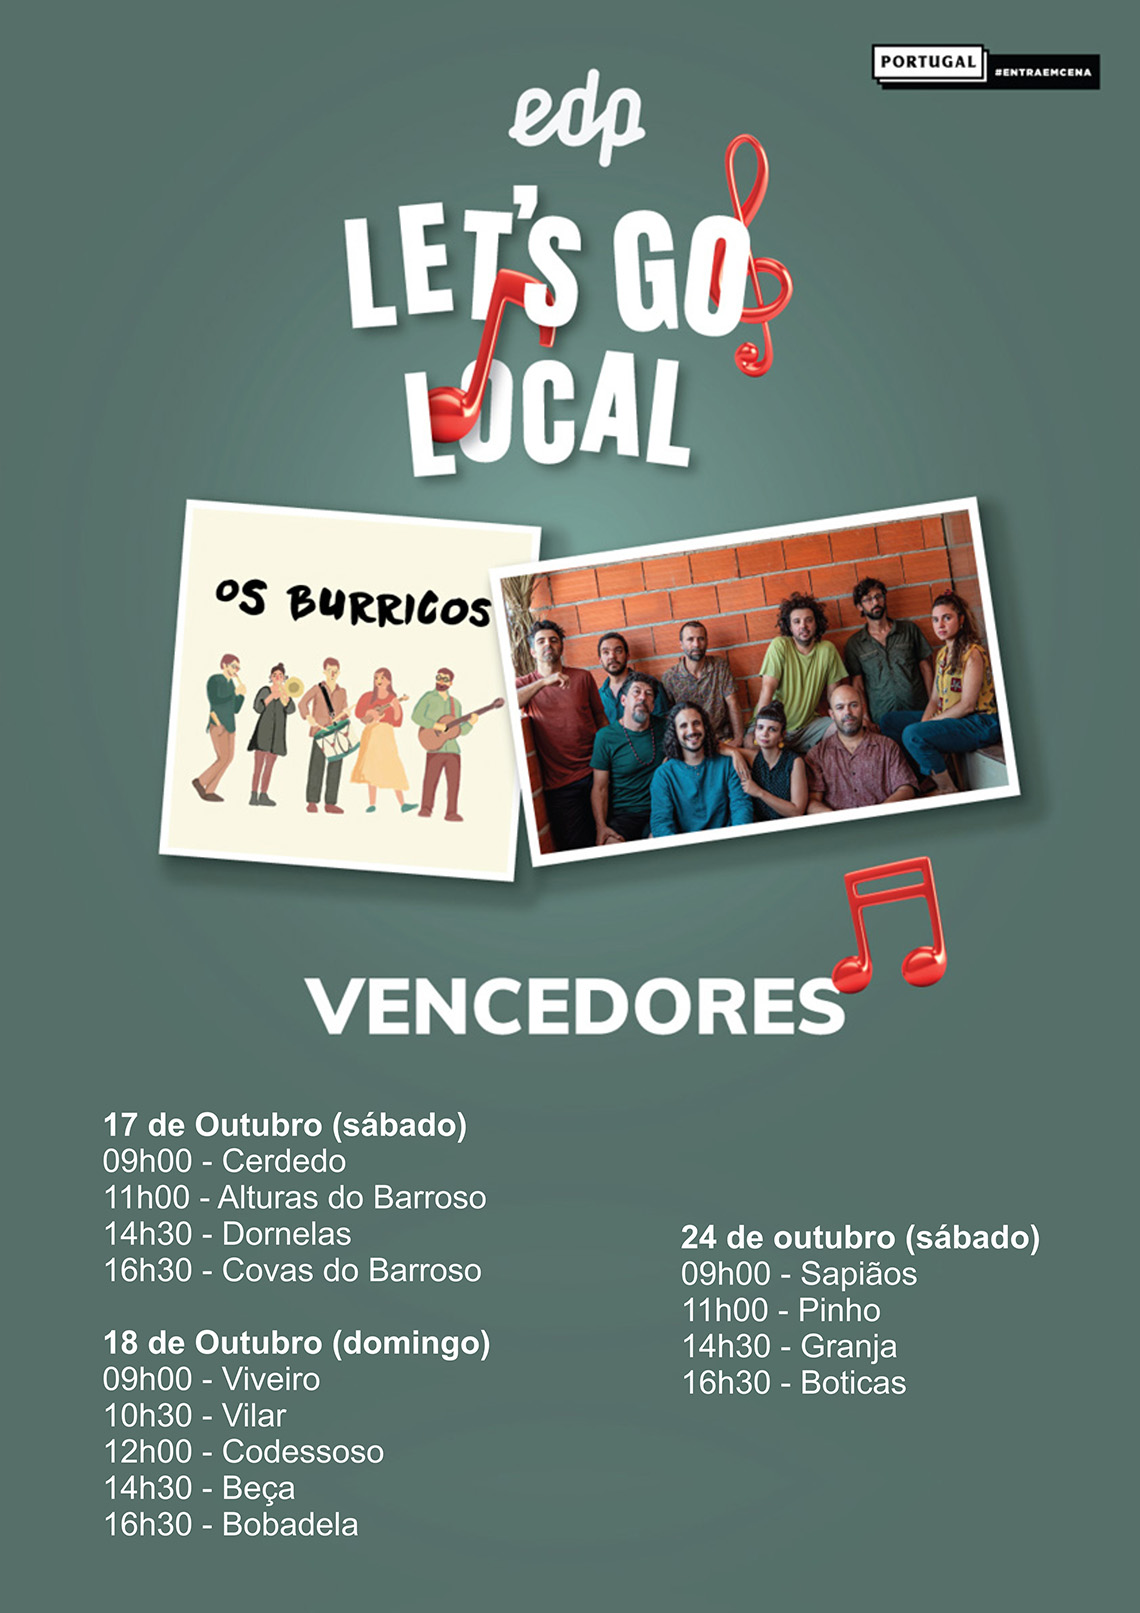 EDP LETS GO LOCAL - Os Burricos 